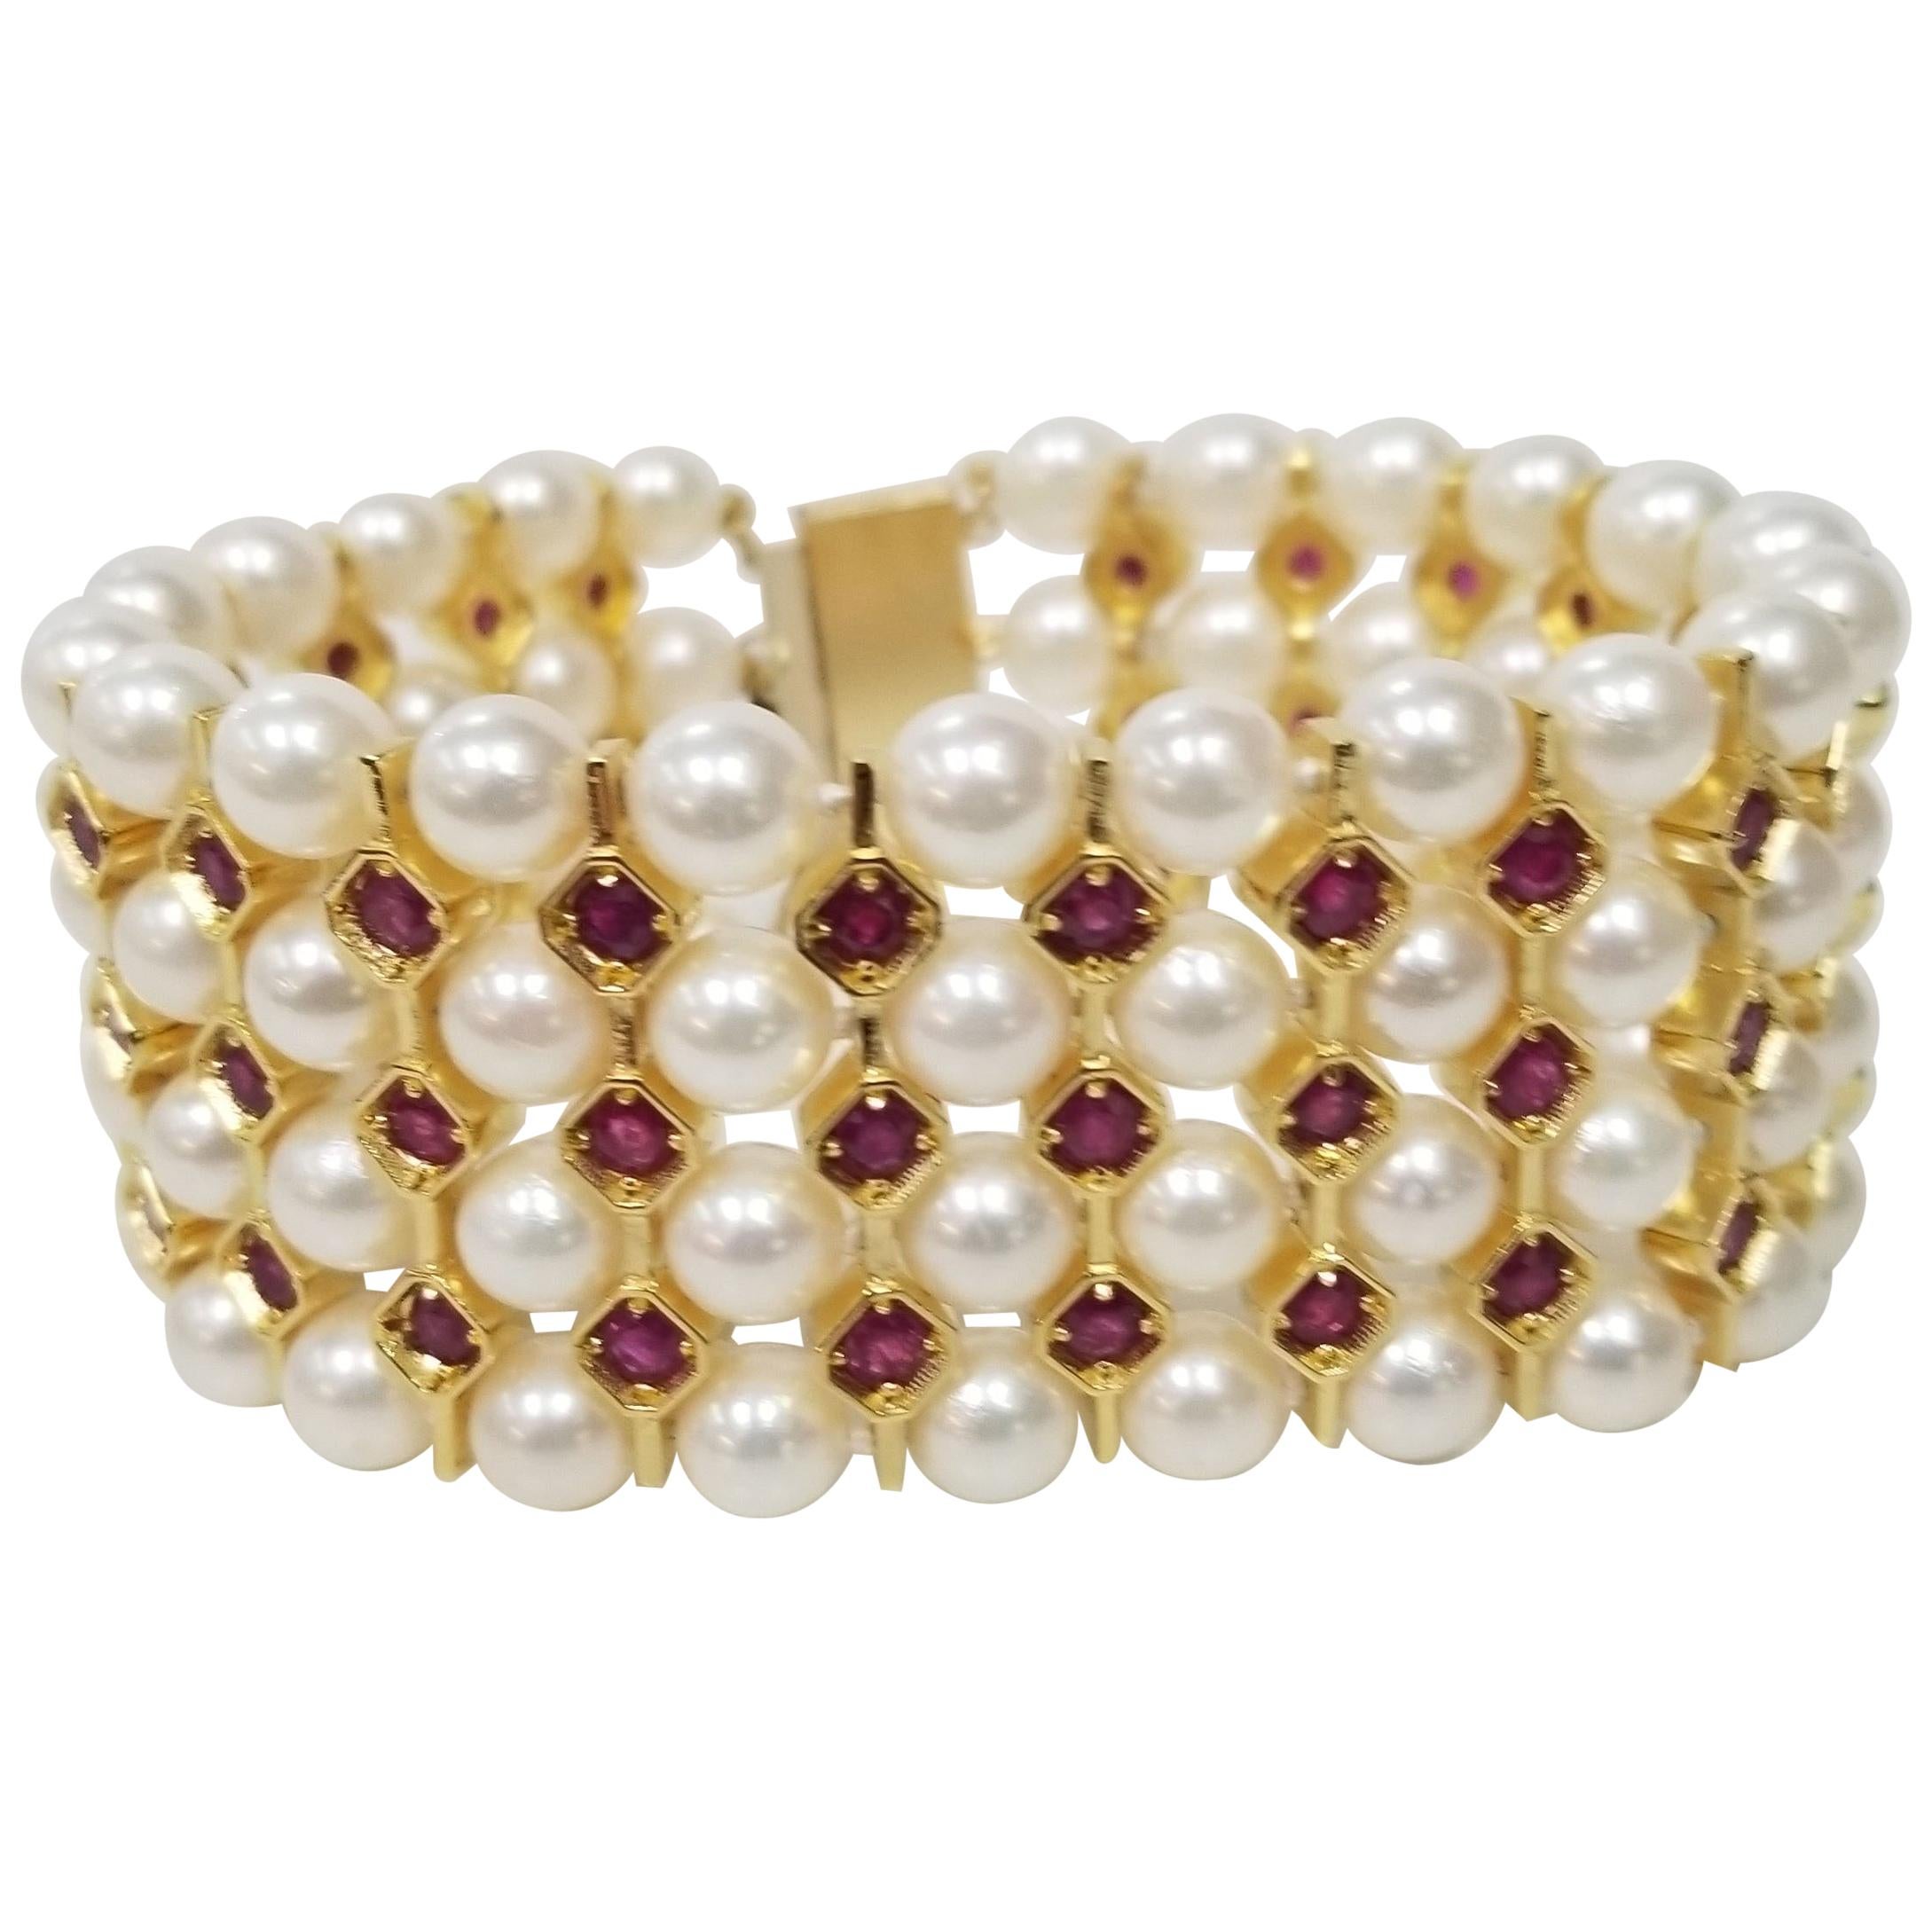 Bracelet de 4 rangées de perles de culture et de rubis en or jaune et argent 14 carats plaqué